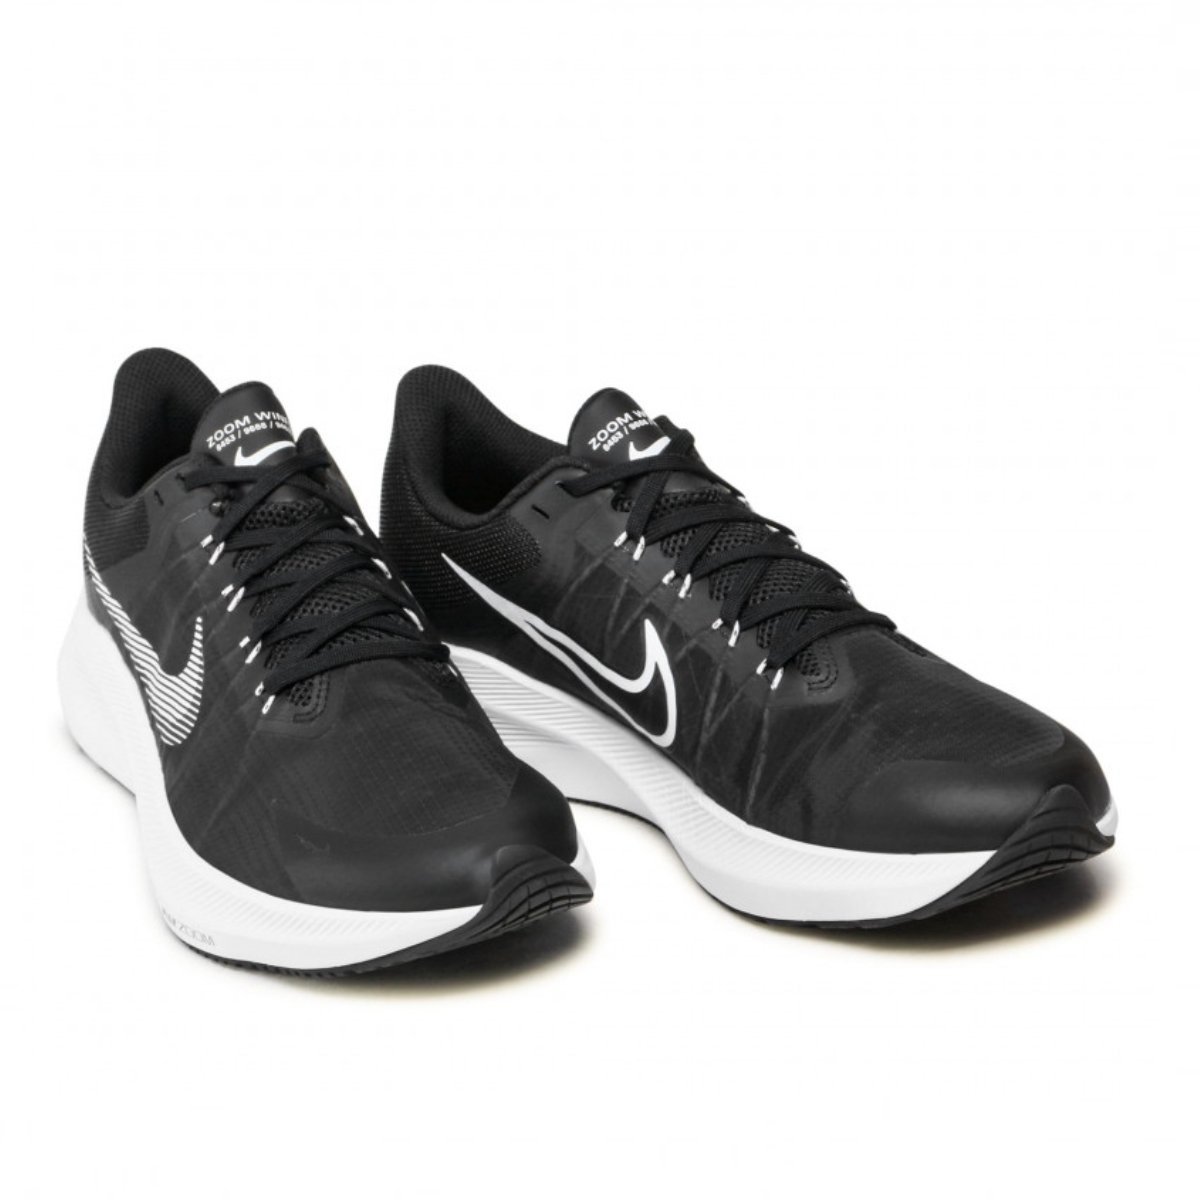 Topánky Nike Zoom Winflo 8 M - čierna/biela